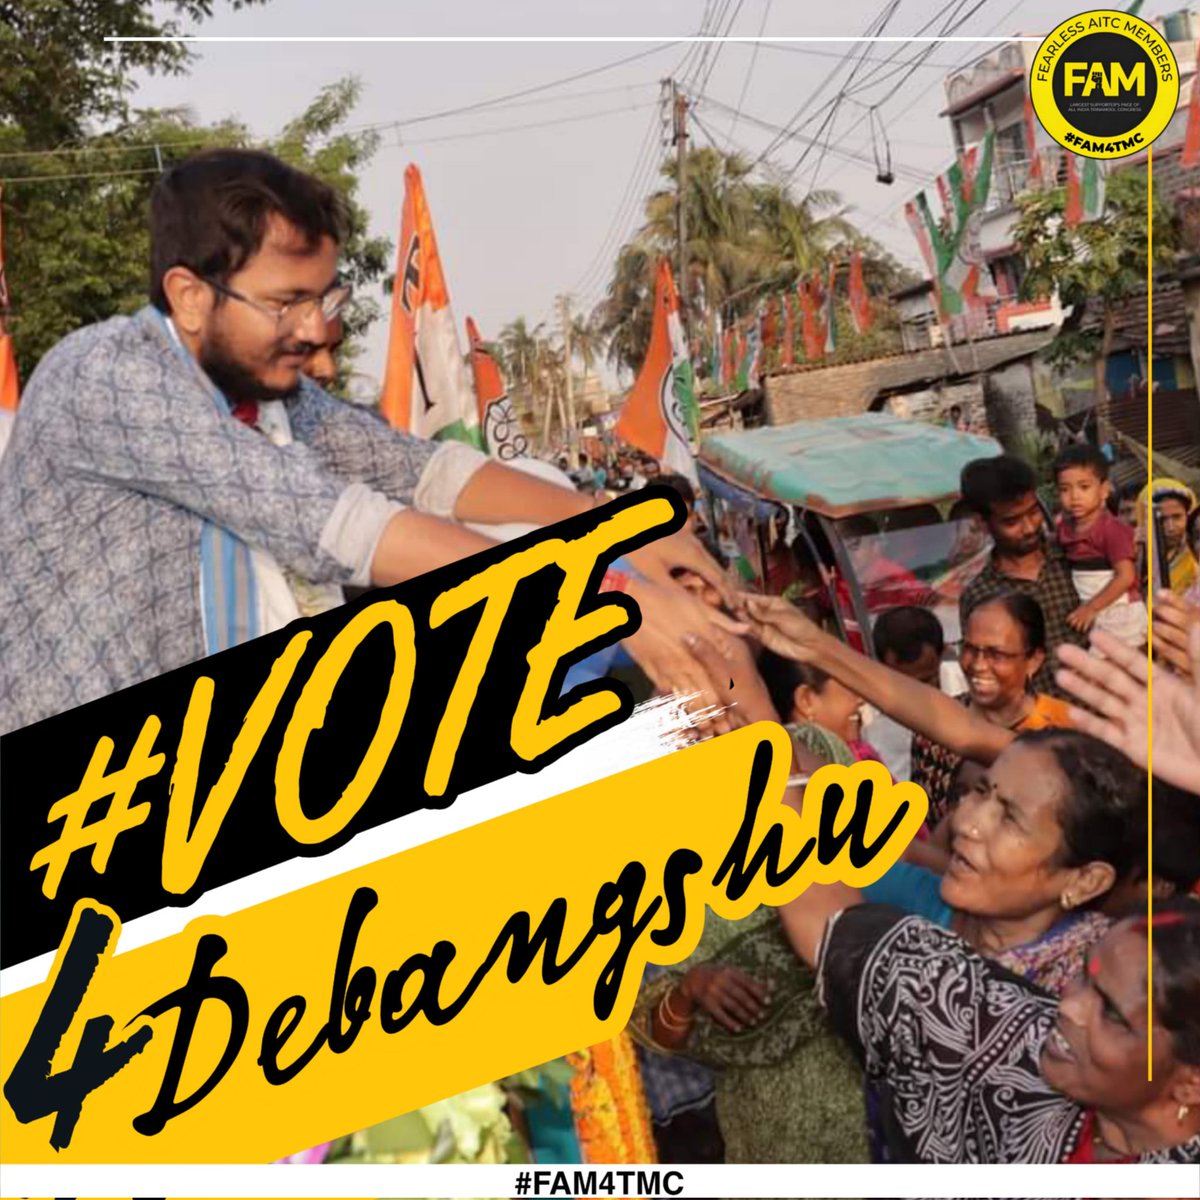 ২৫ শে মে আসছে সুযোগ 
আসছে সেই সুদিন 
জোড়া ফুলে ভোট টা দিয়ে 
সোনার বাংলা উপহার নিন।
#Vote4Debangshu
#FAM4TMC